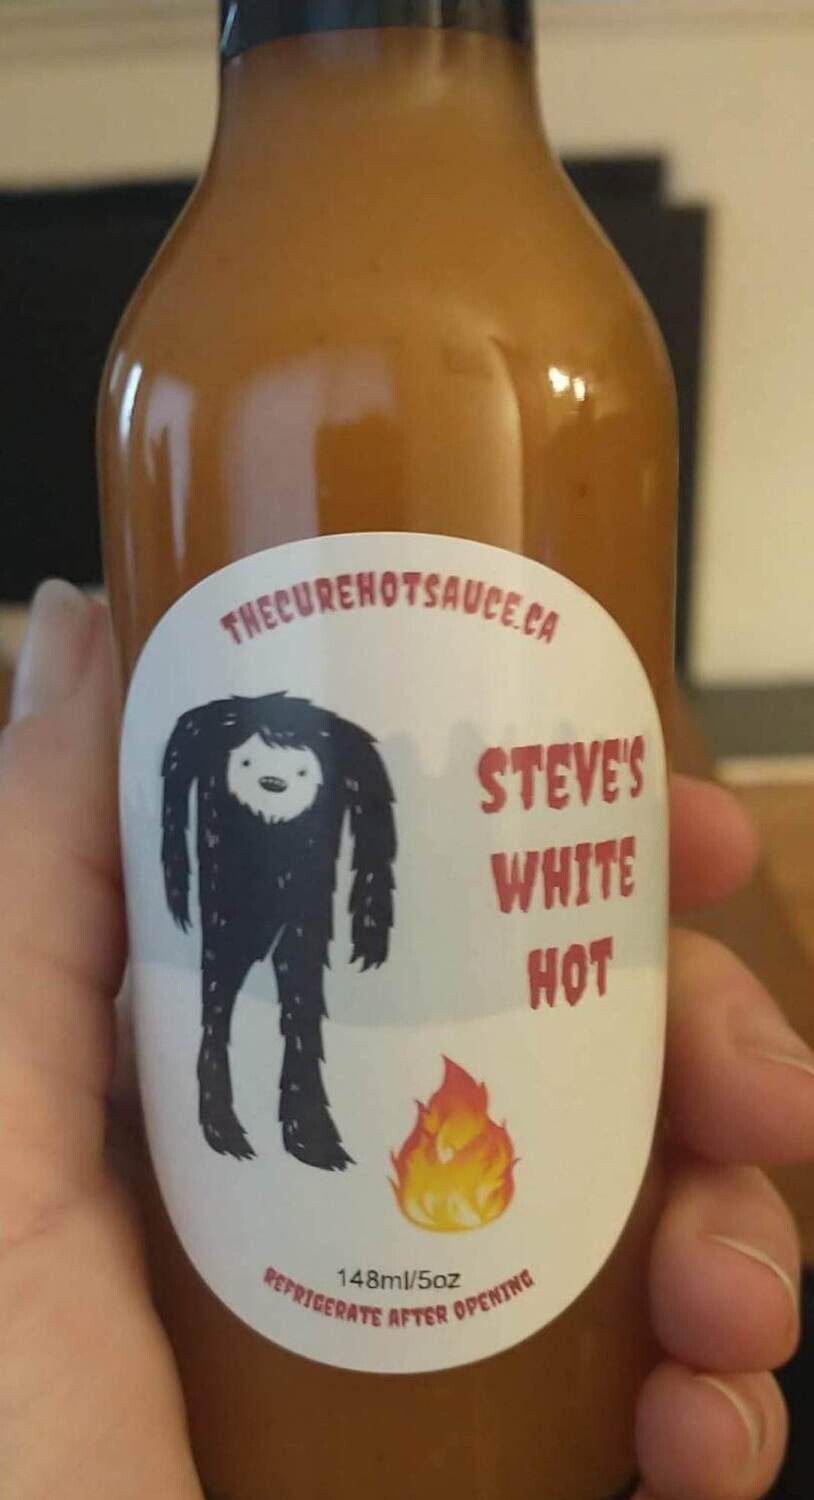 Steve's White hot